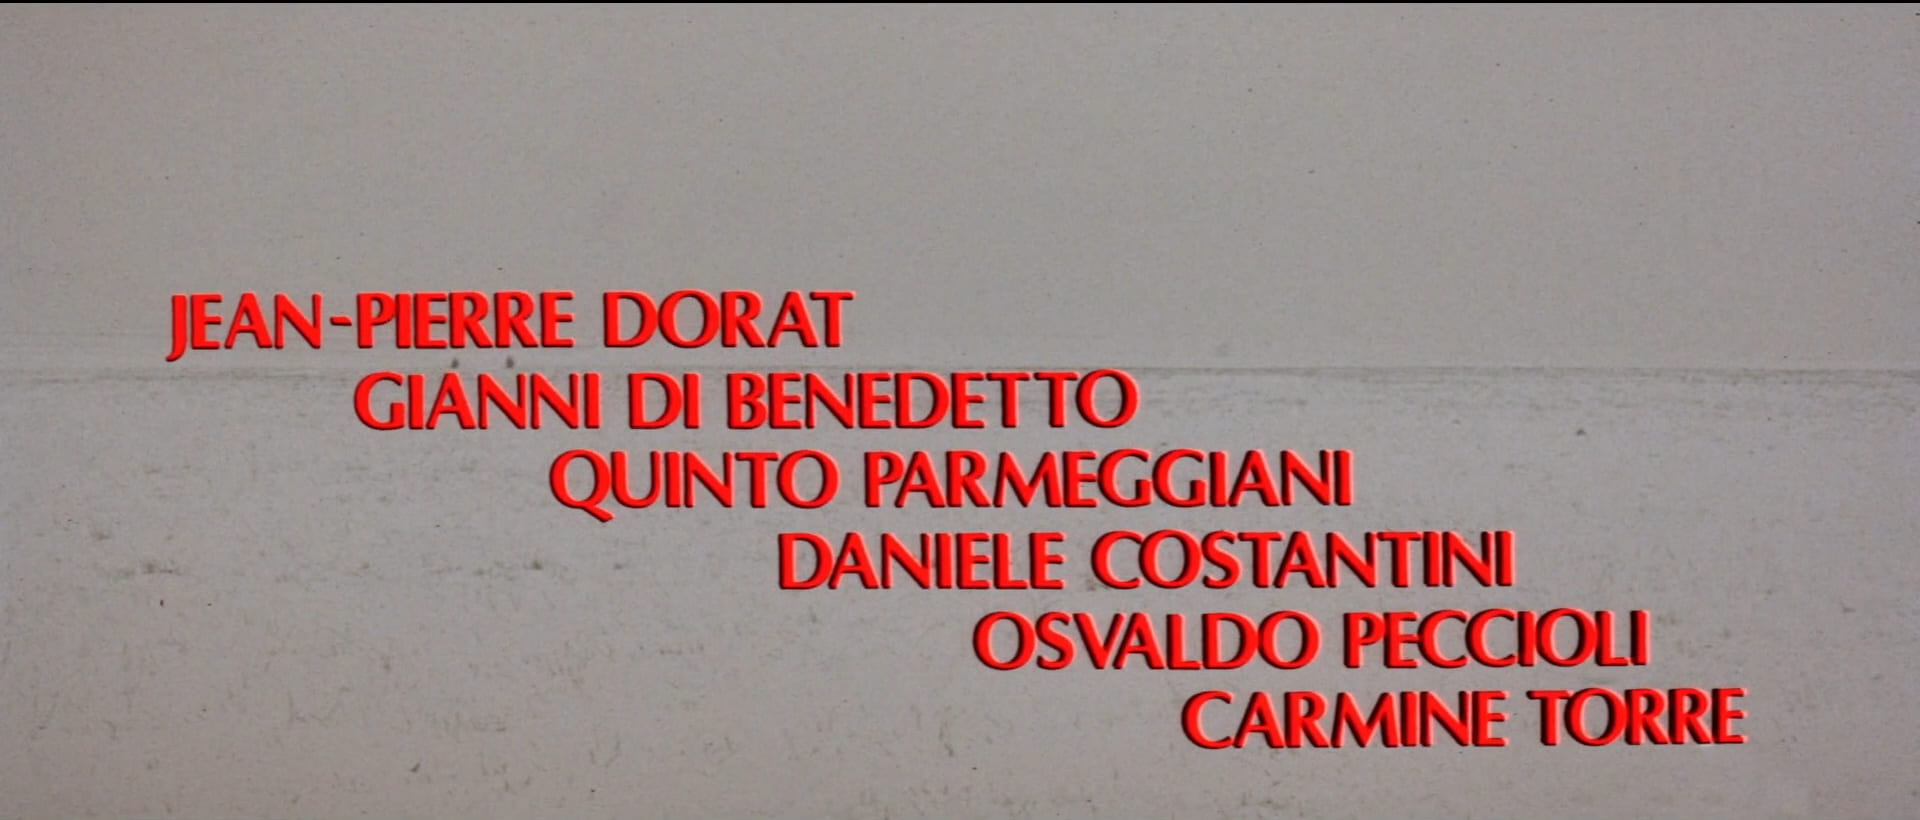 1970 _ Strogoff _ Generale Oregoff _ Accreditato Come Gianni Di Benedetto _ 04.jpg